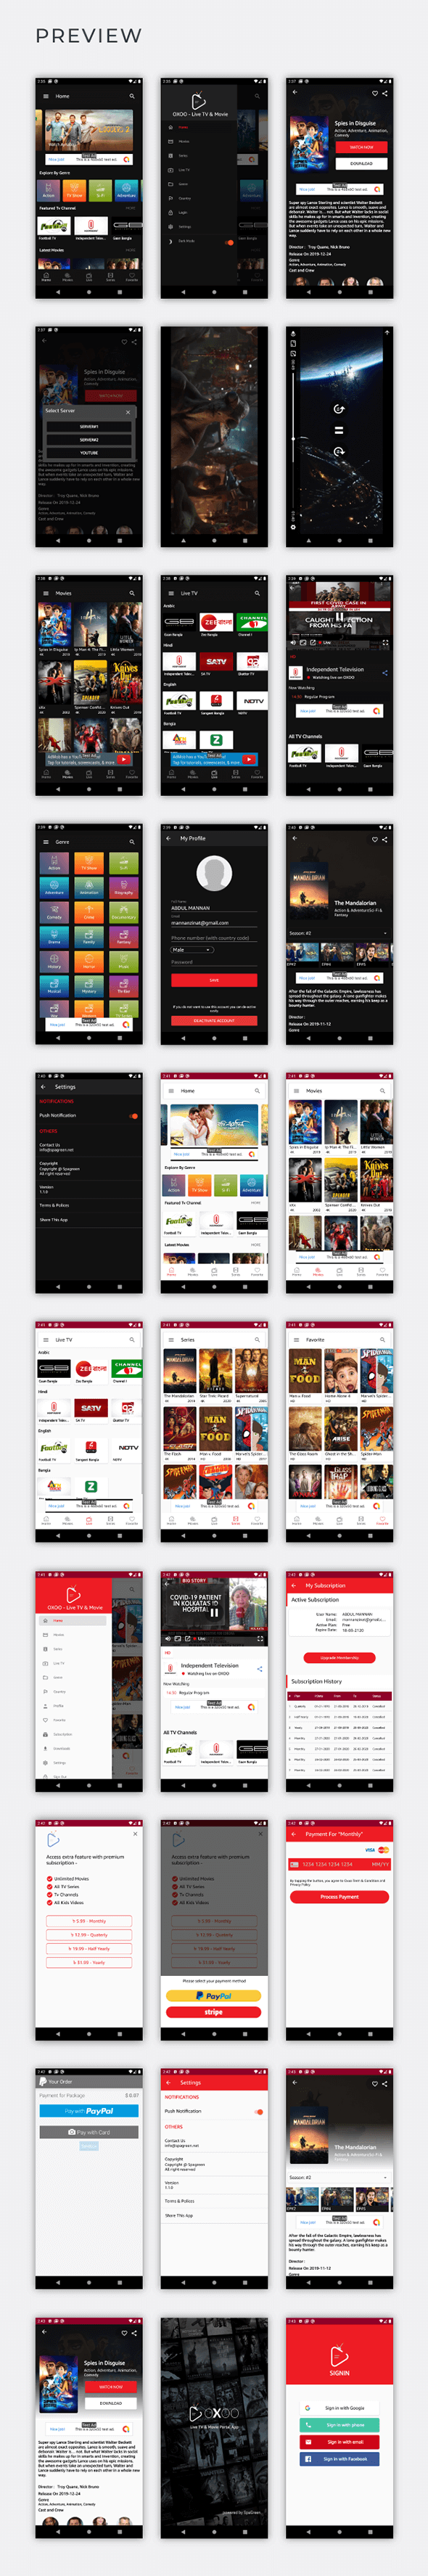 OXOO - Abonelik Sistemli Android Canlı TV ve Film Portalı Uygulaması - 4